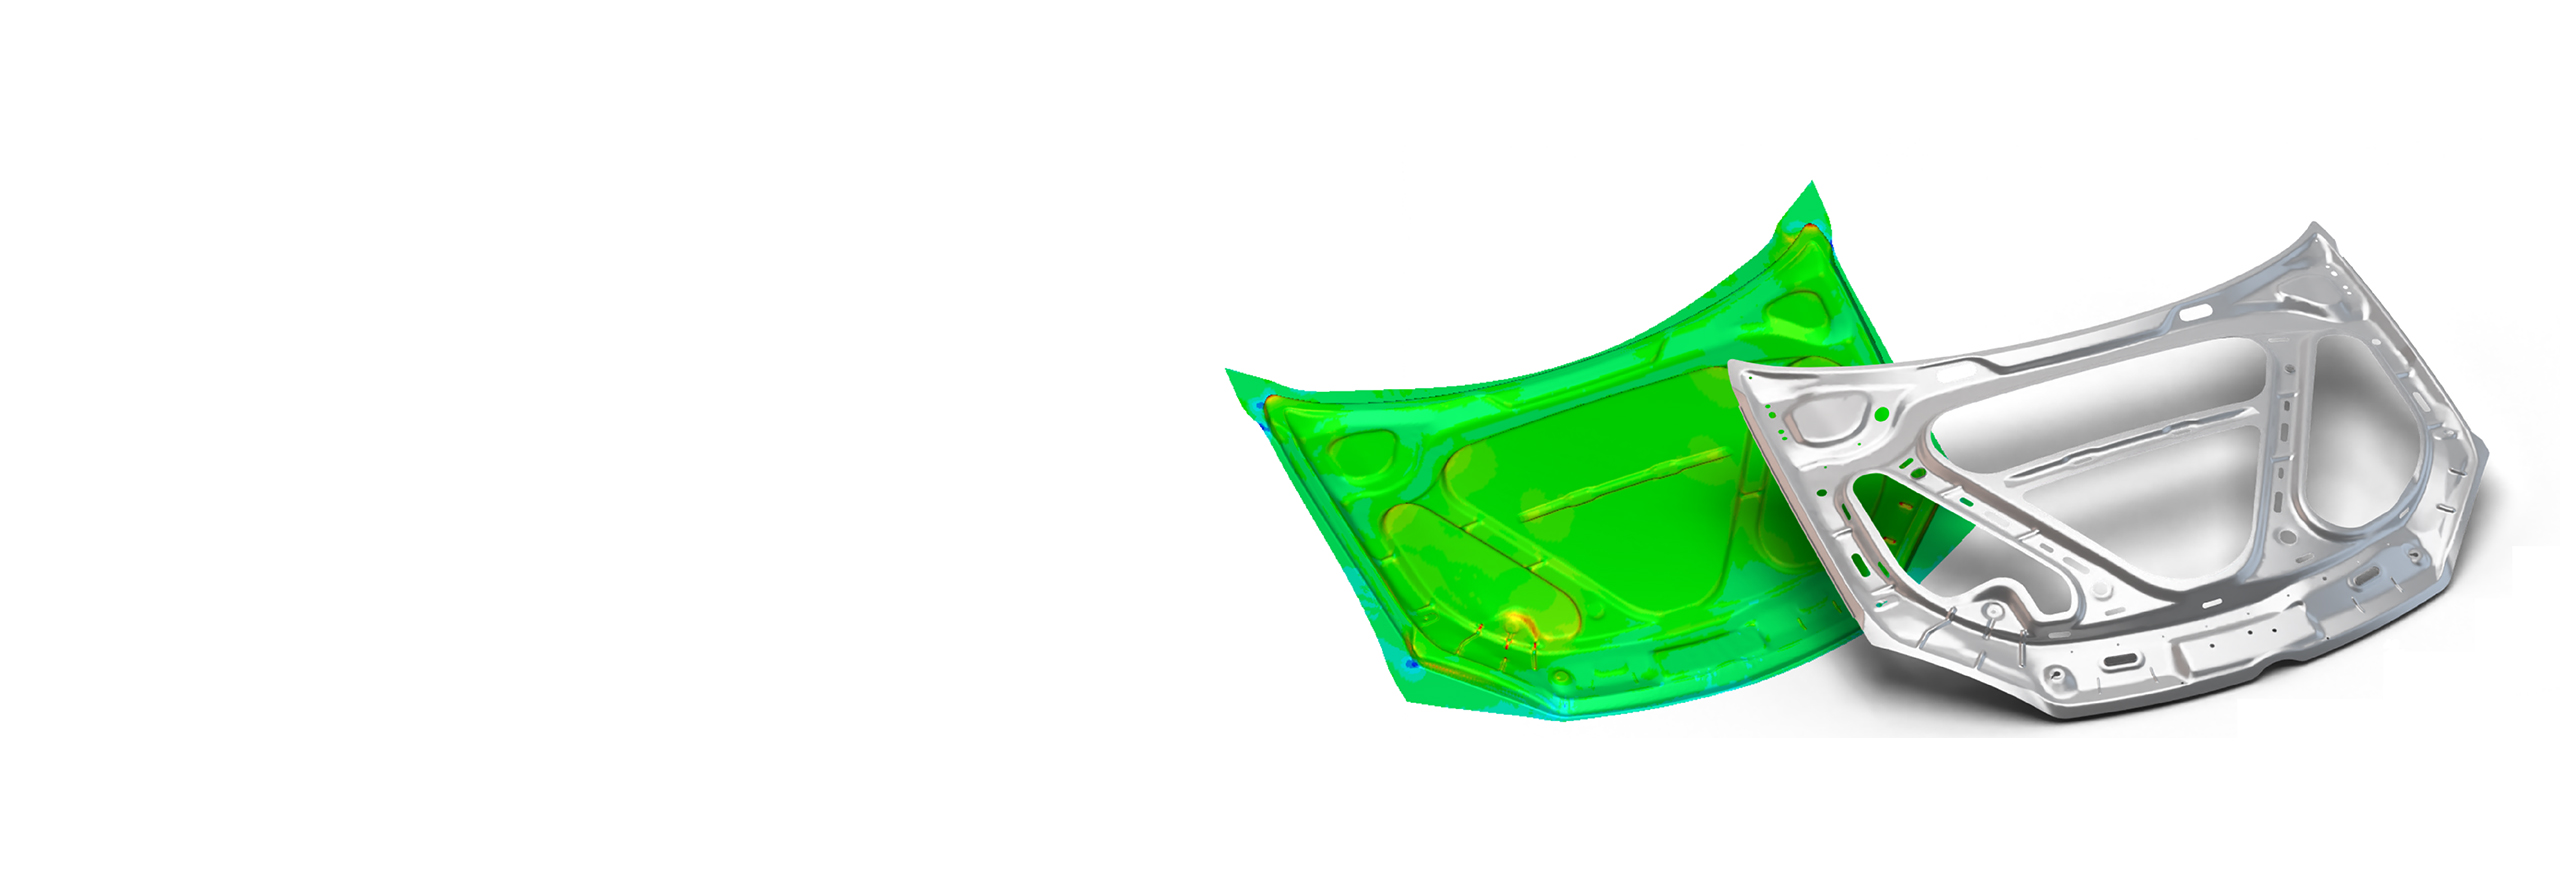 Simulação de software de análise de chapa metálica FTI FASTIncremental de peças automotivas